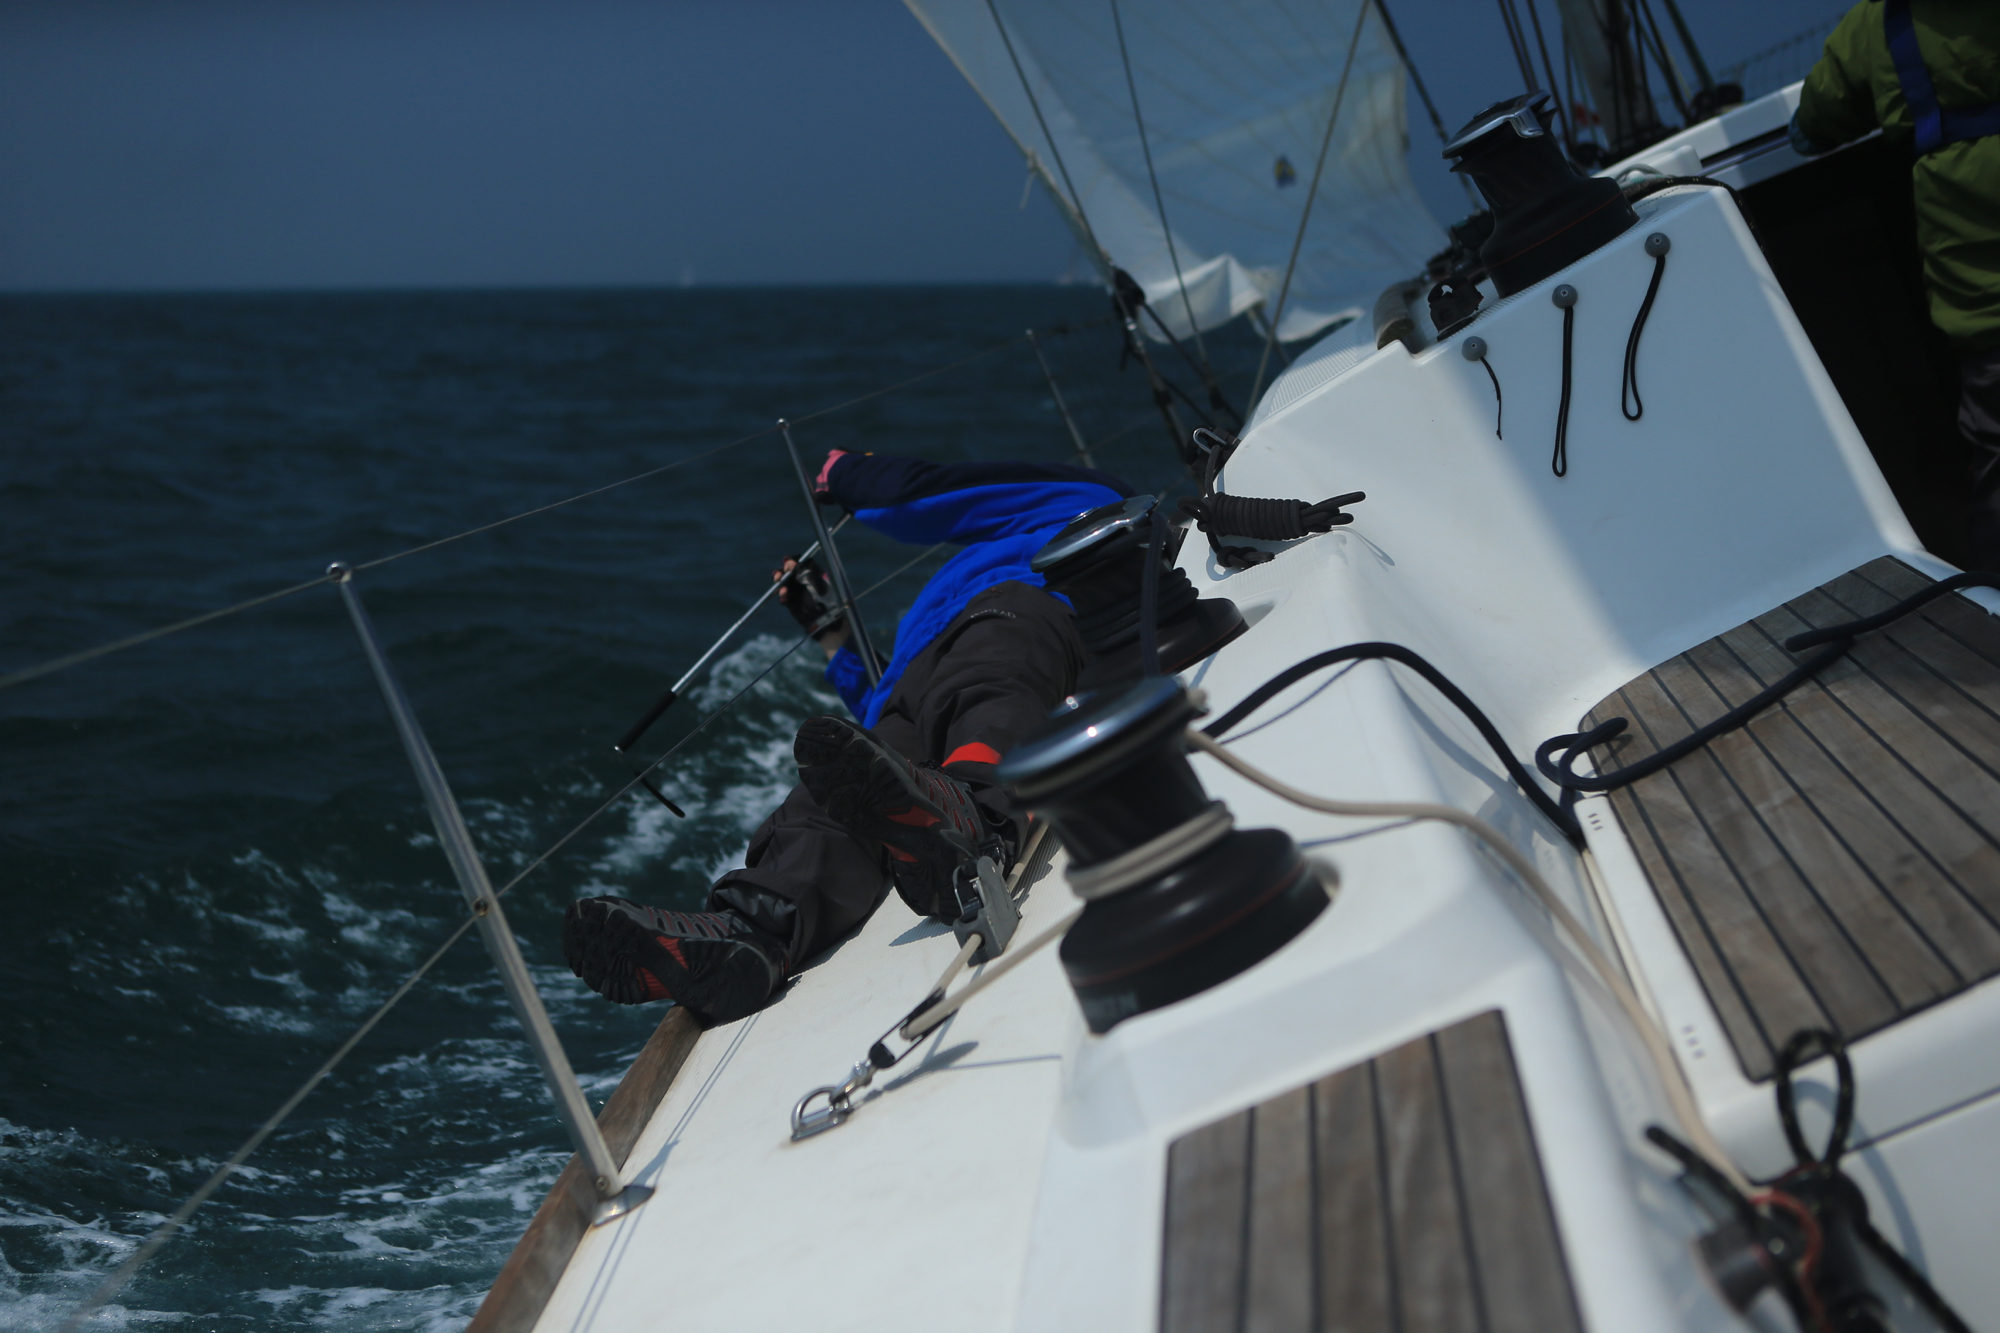 我要航海网帆船队-2015-CCOR - 060.jpg